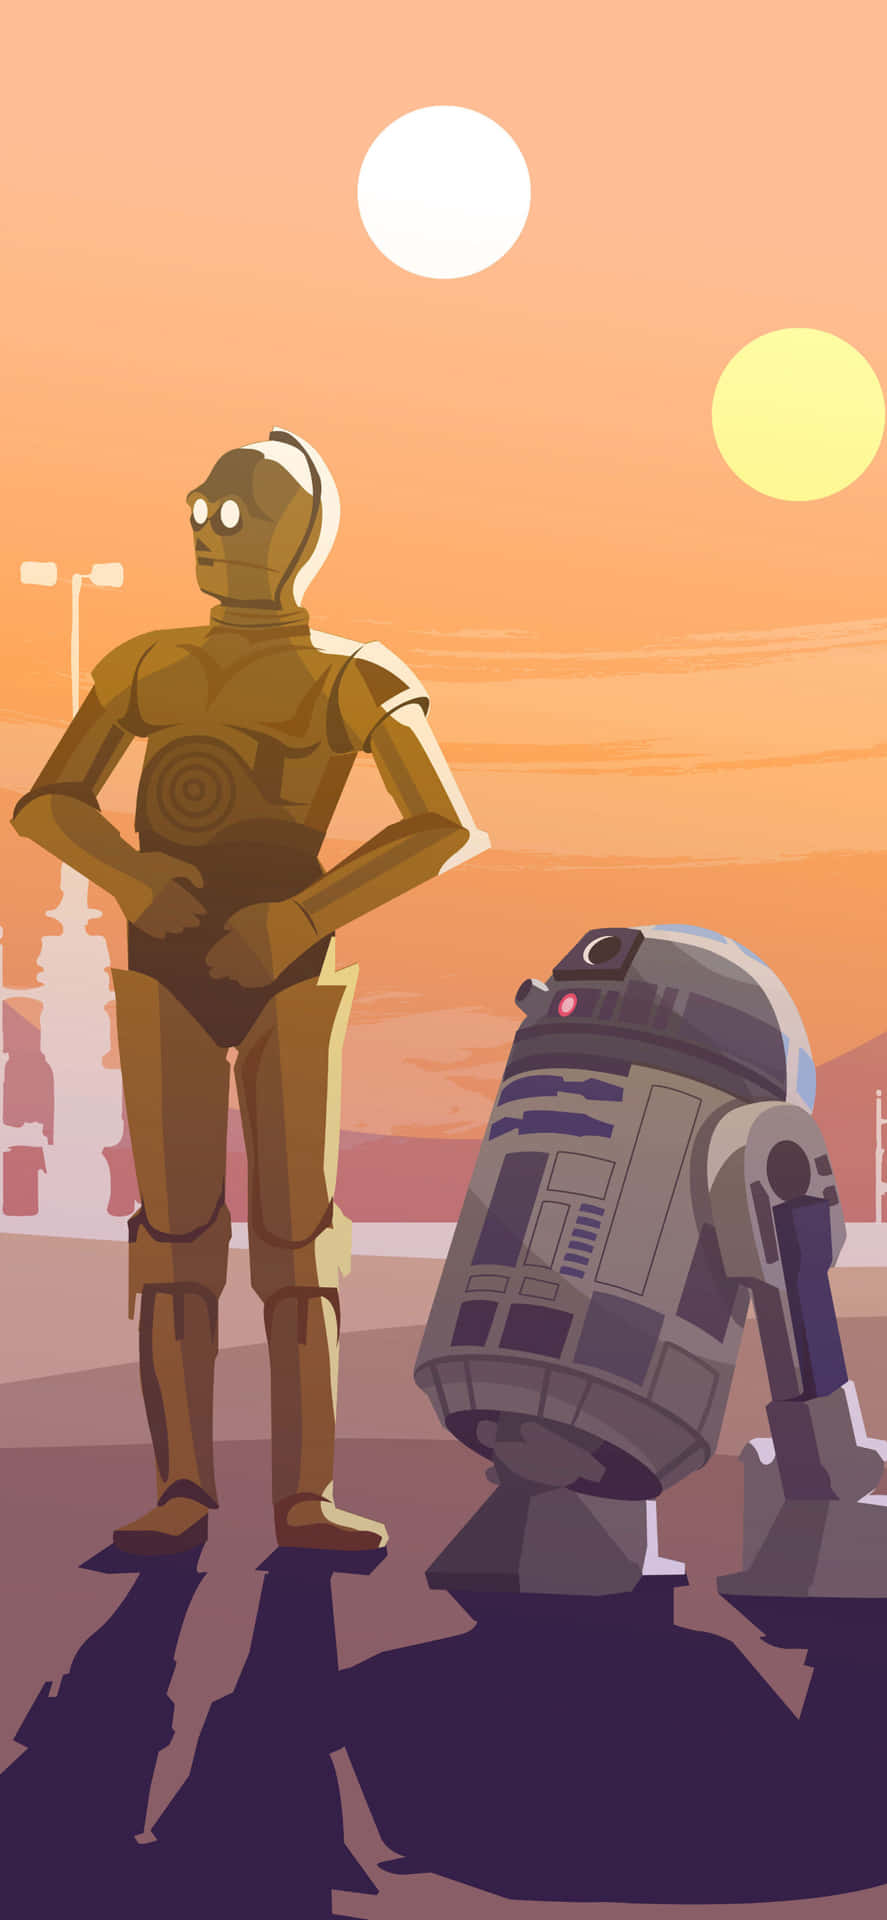 Einheld Für Viele, R2-d2 Ist Da! Wallpaper